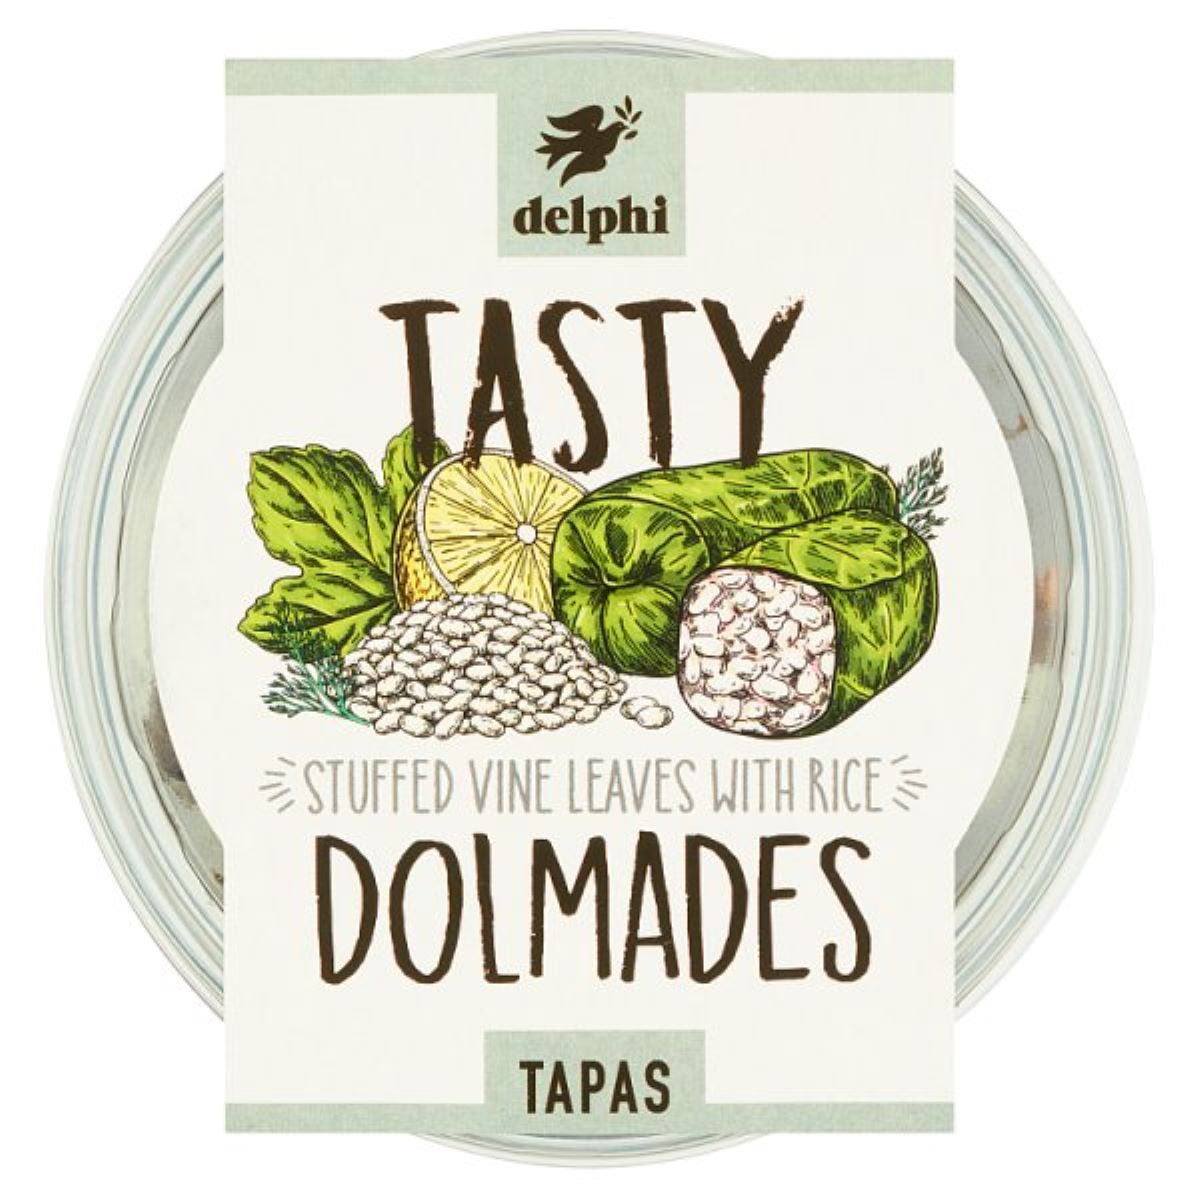 Delphi Tasty Dolmades 150g